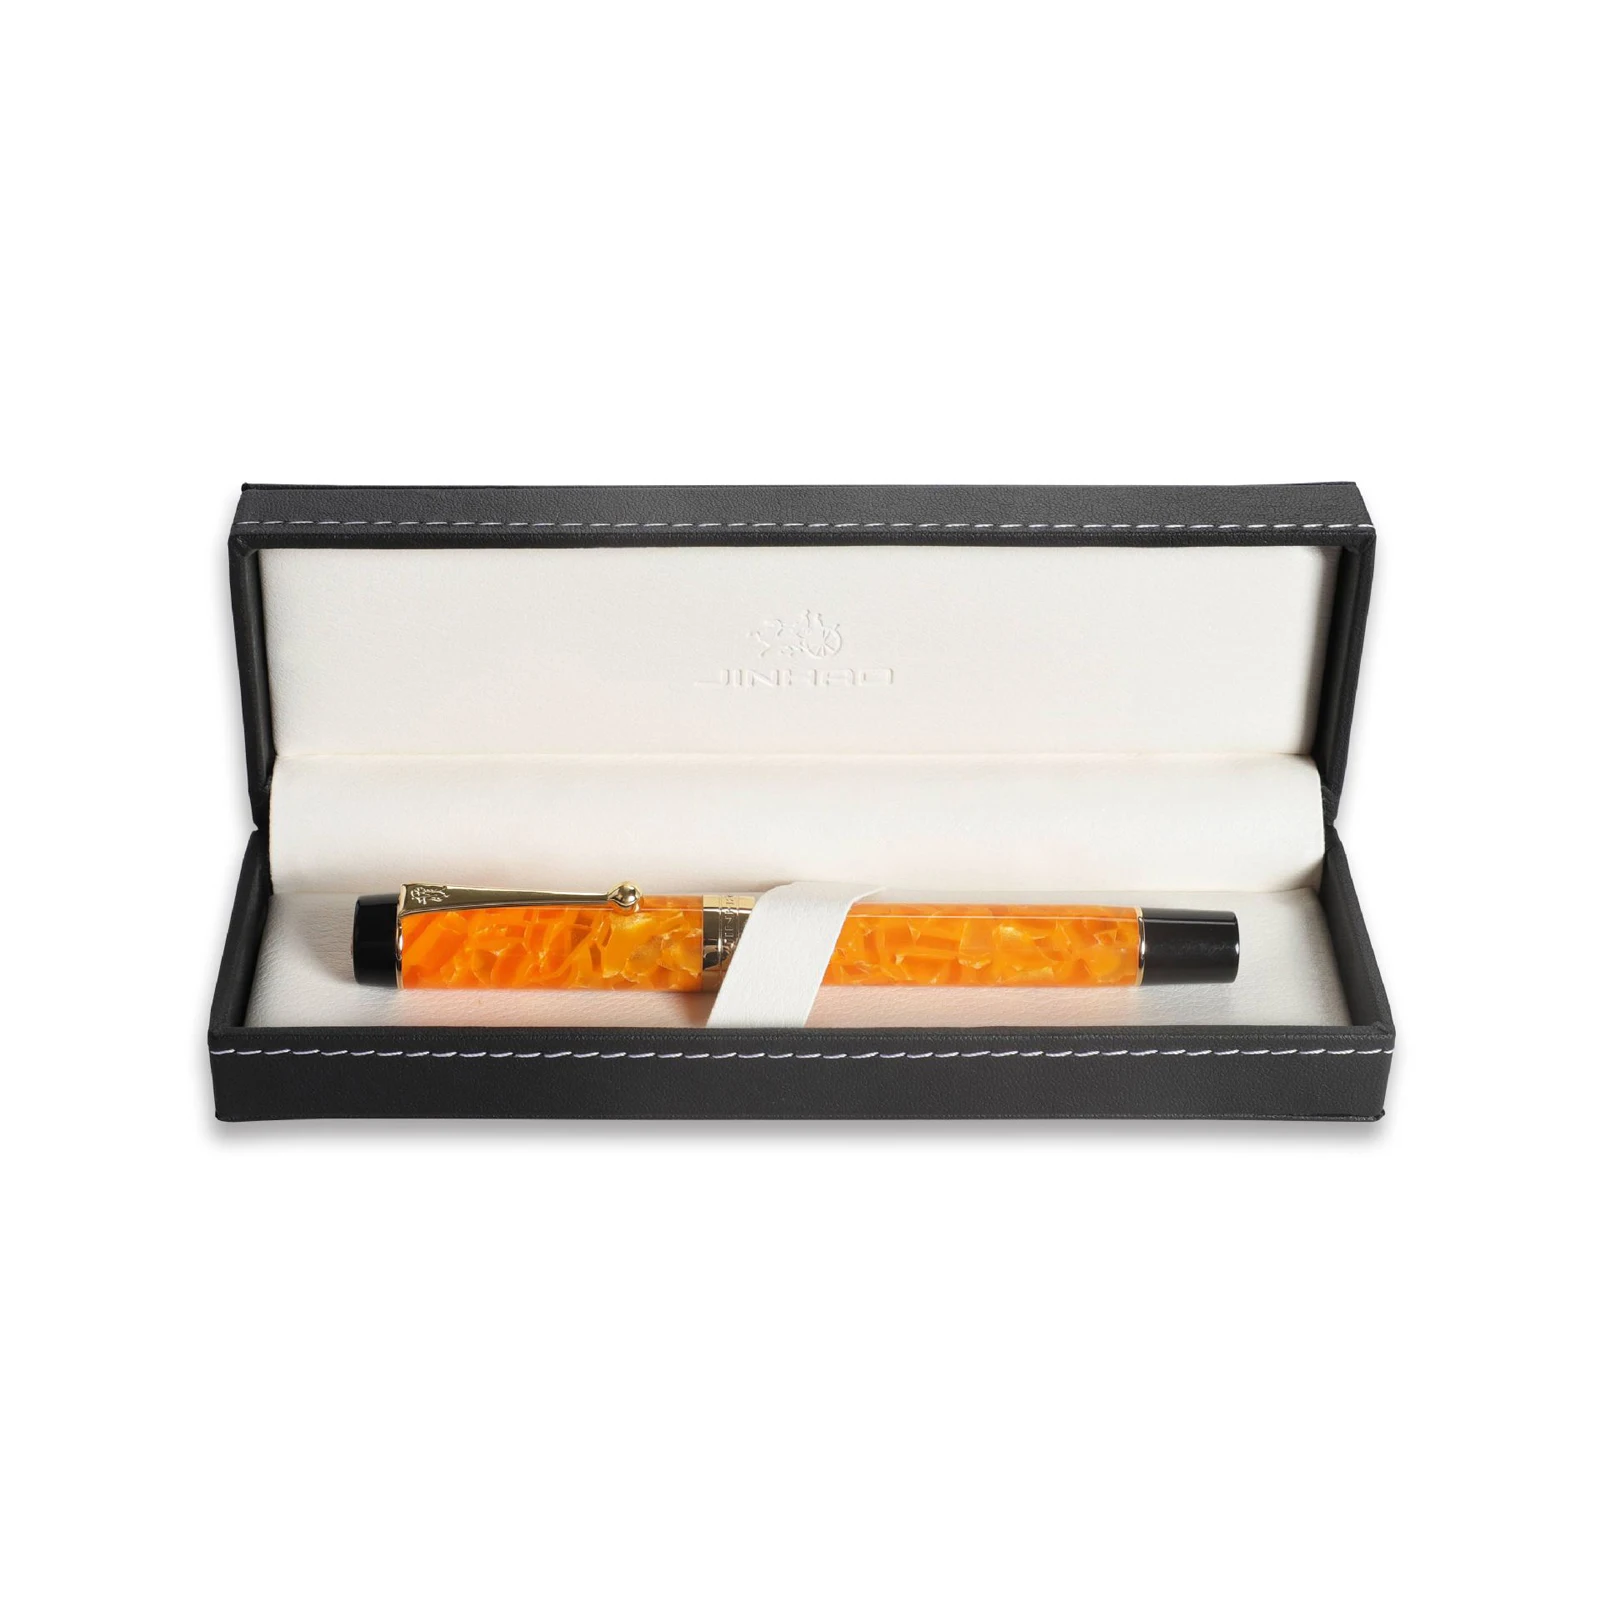 Jinhao Роскошная коробка Для Хранения авторучки Пенал Кожаная Упаковочная Коробка Дисплей Коробка для Бизнеса офис Подарочная Коробка высокого качества